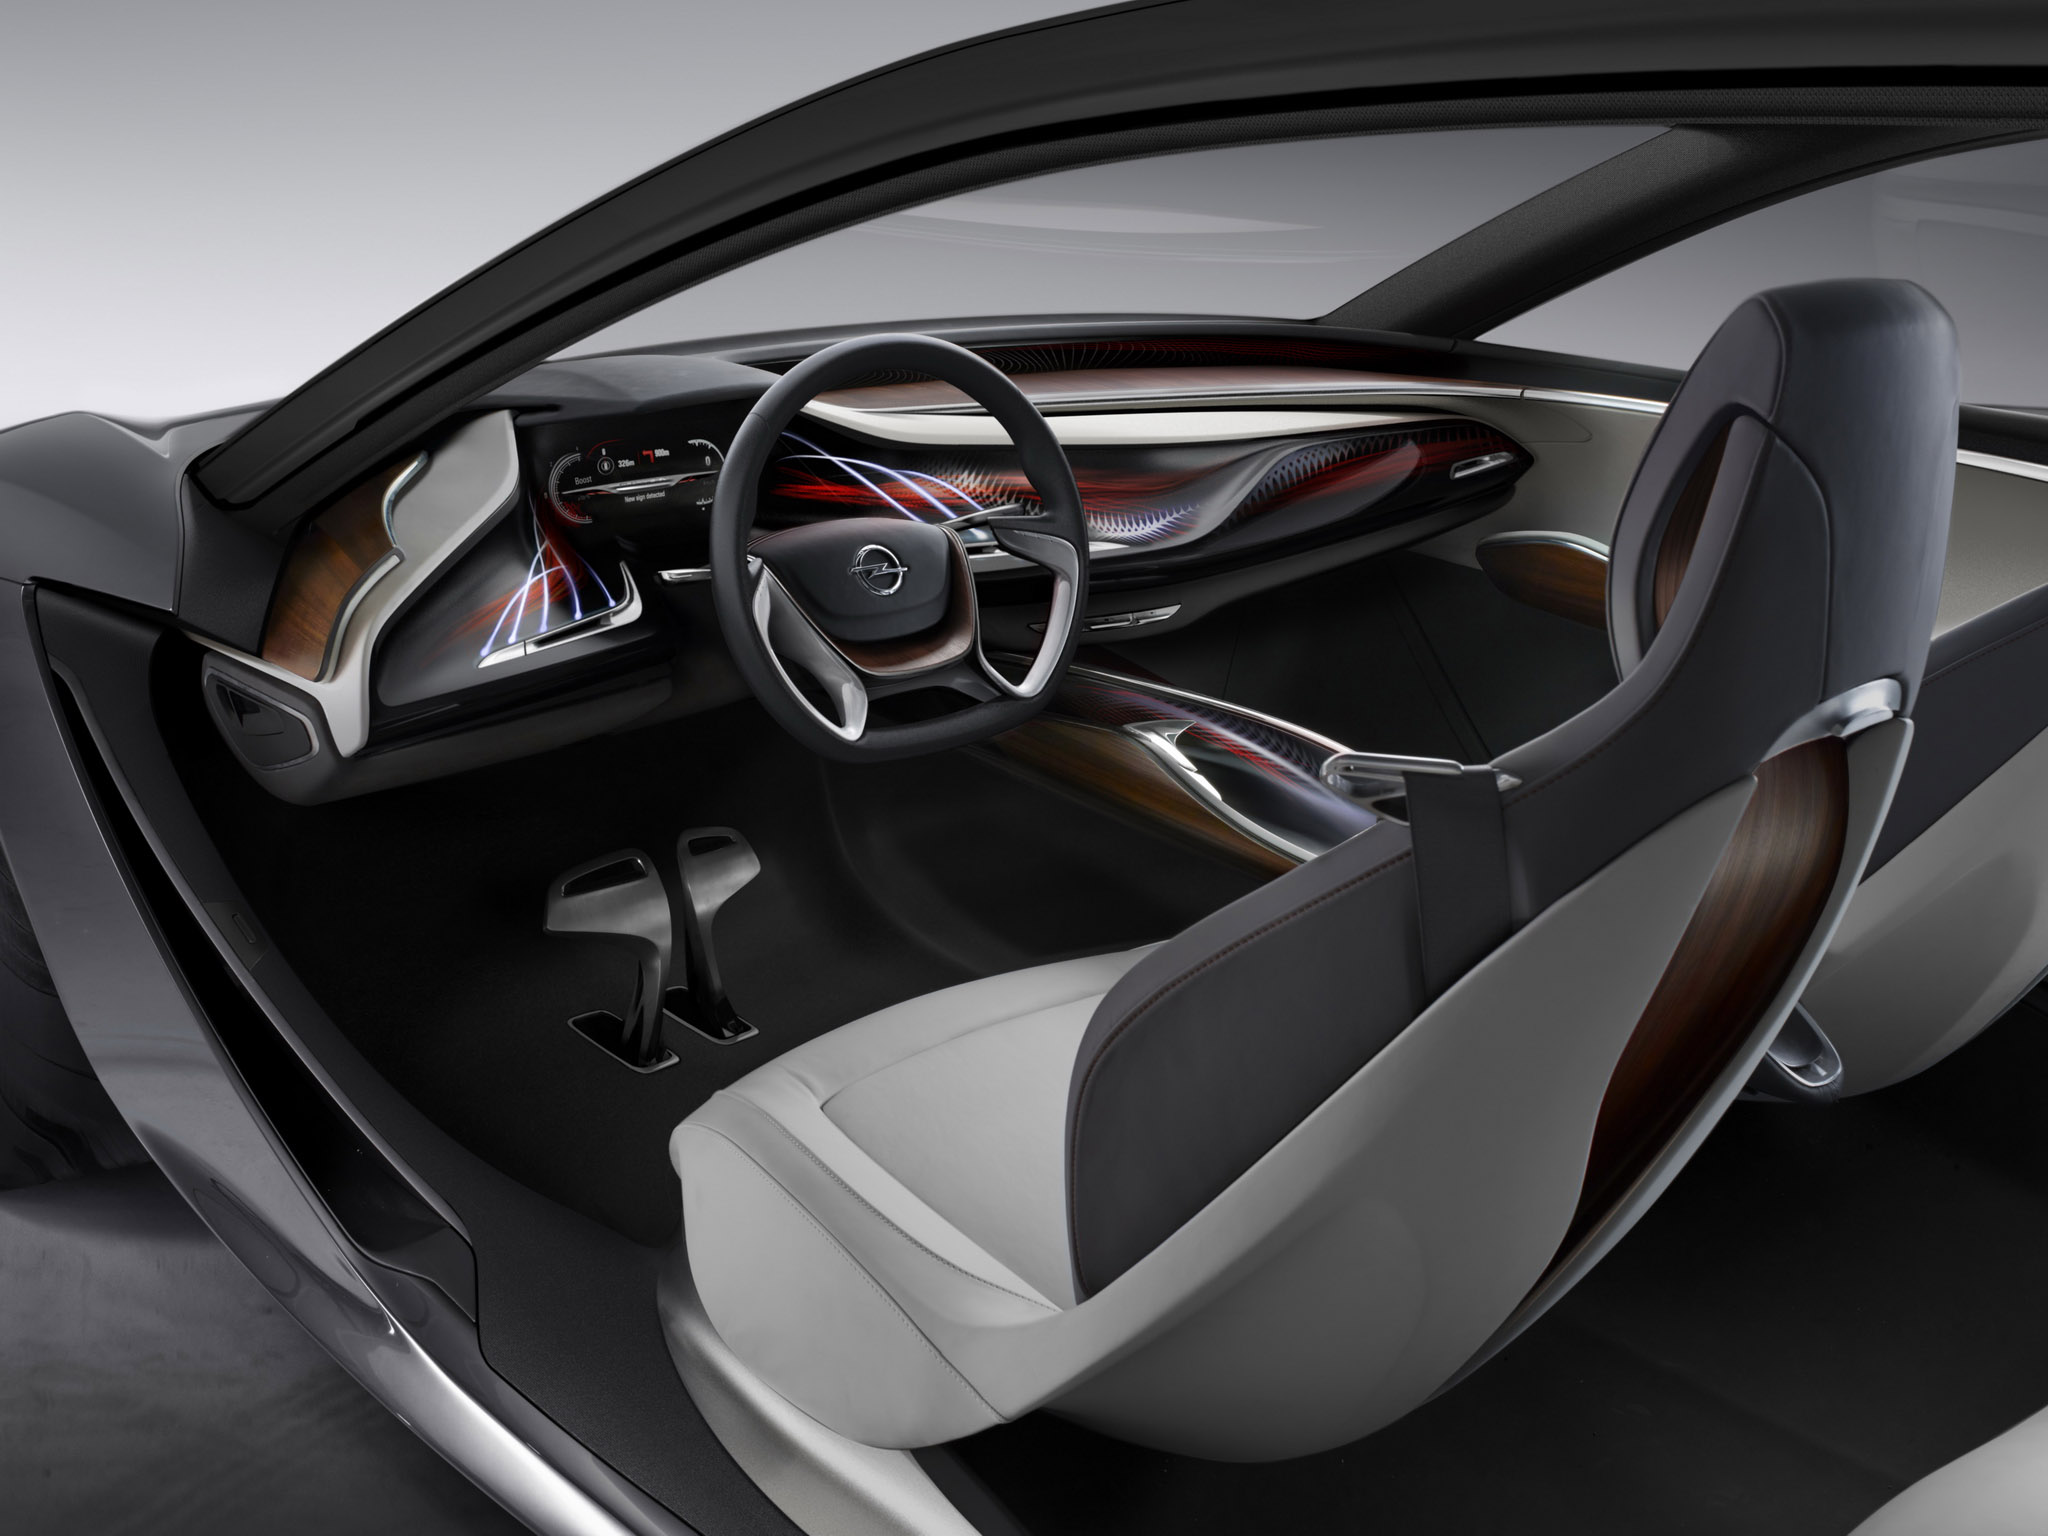 2013, Opel, Monza, Concept, Supercar, Interior Wallpaper